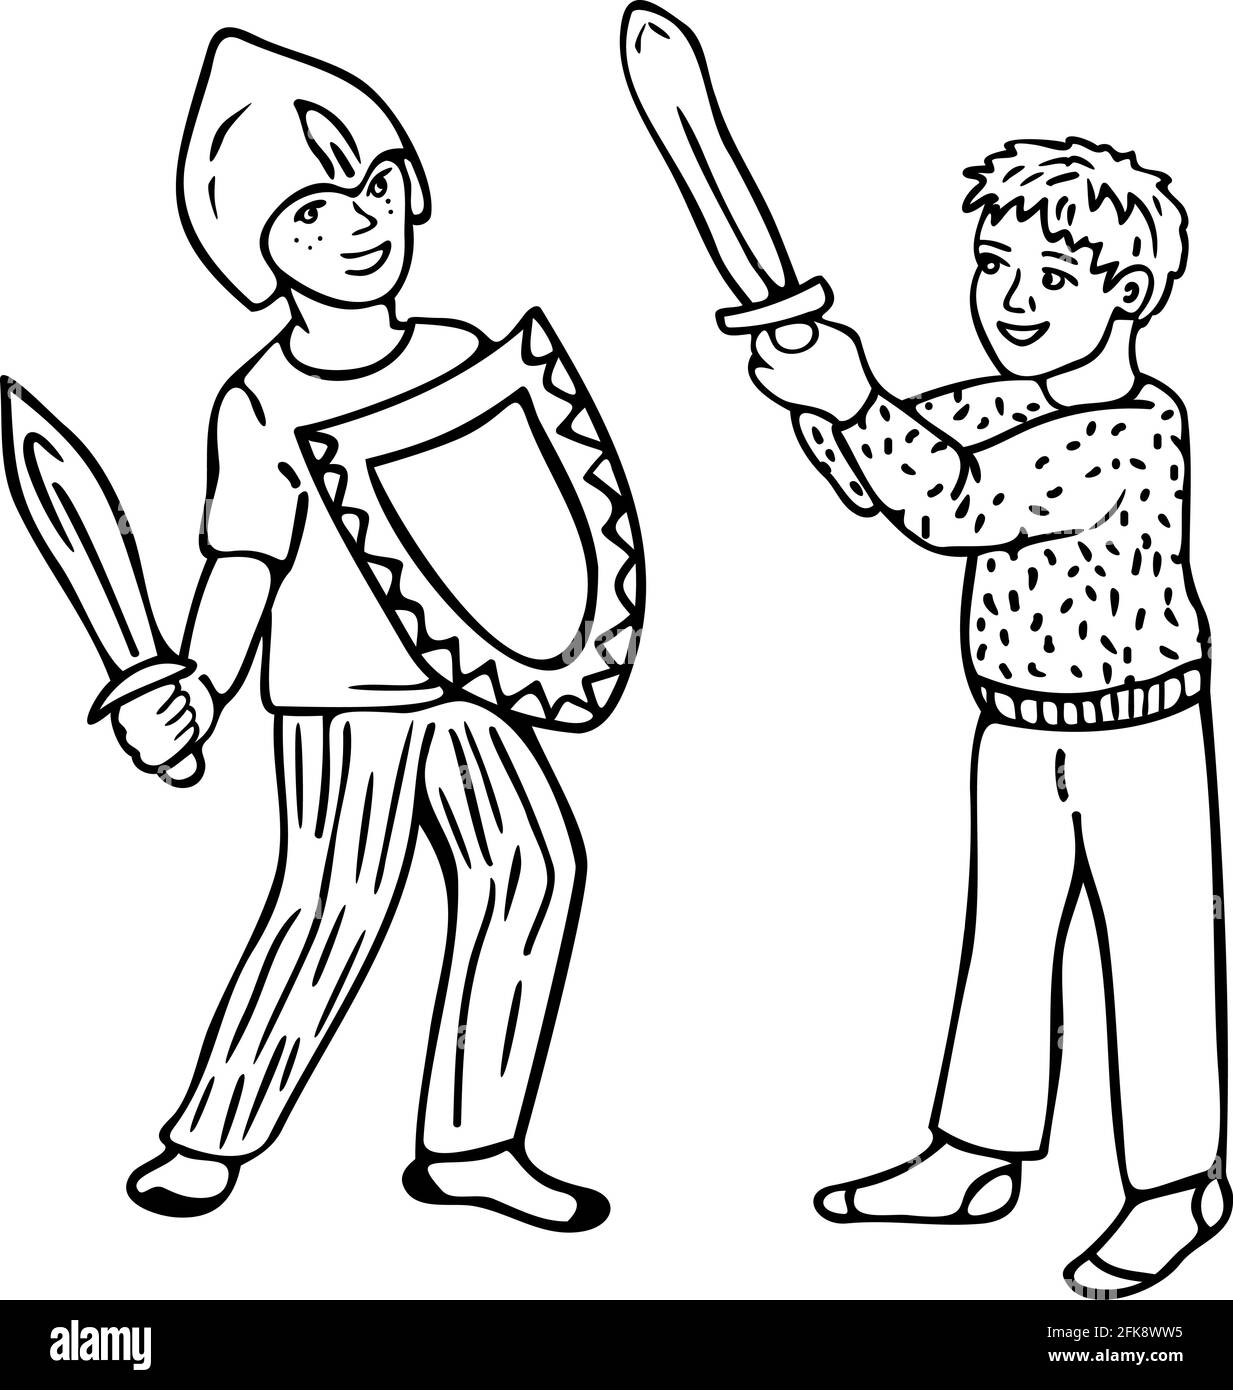 Vektor schwarz-weiß Illustration mit Witz Kampf von zwei kleinen Jungen. Zwei Jungen in Spielzeugrüstung. Design für das ausmalen. Stock Vektor